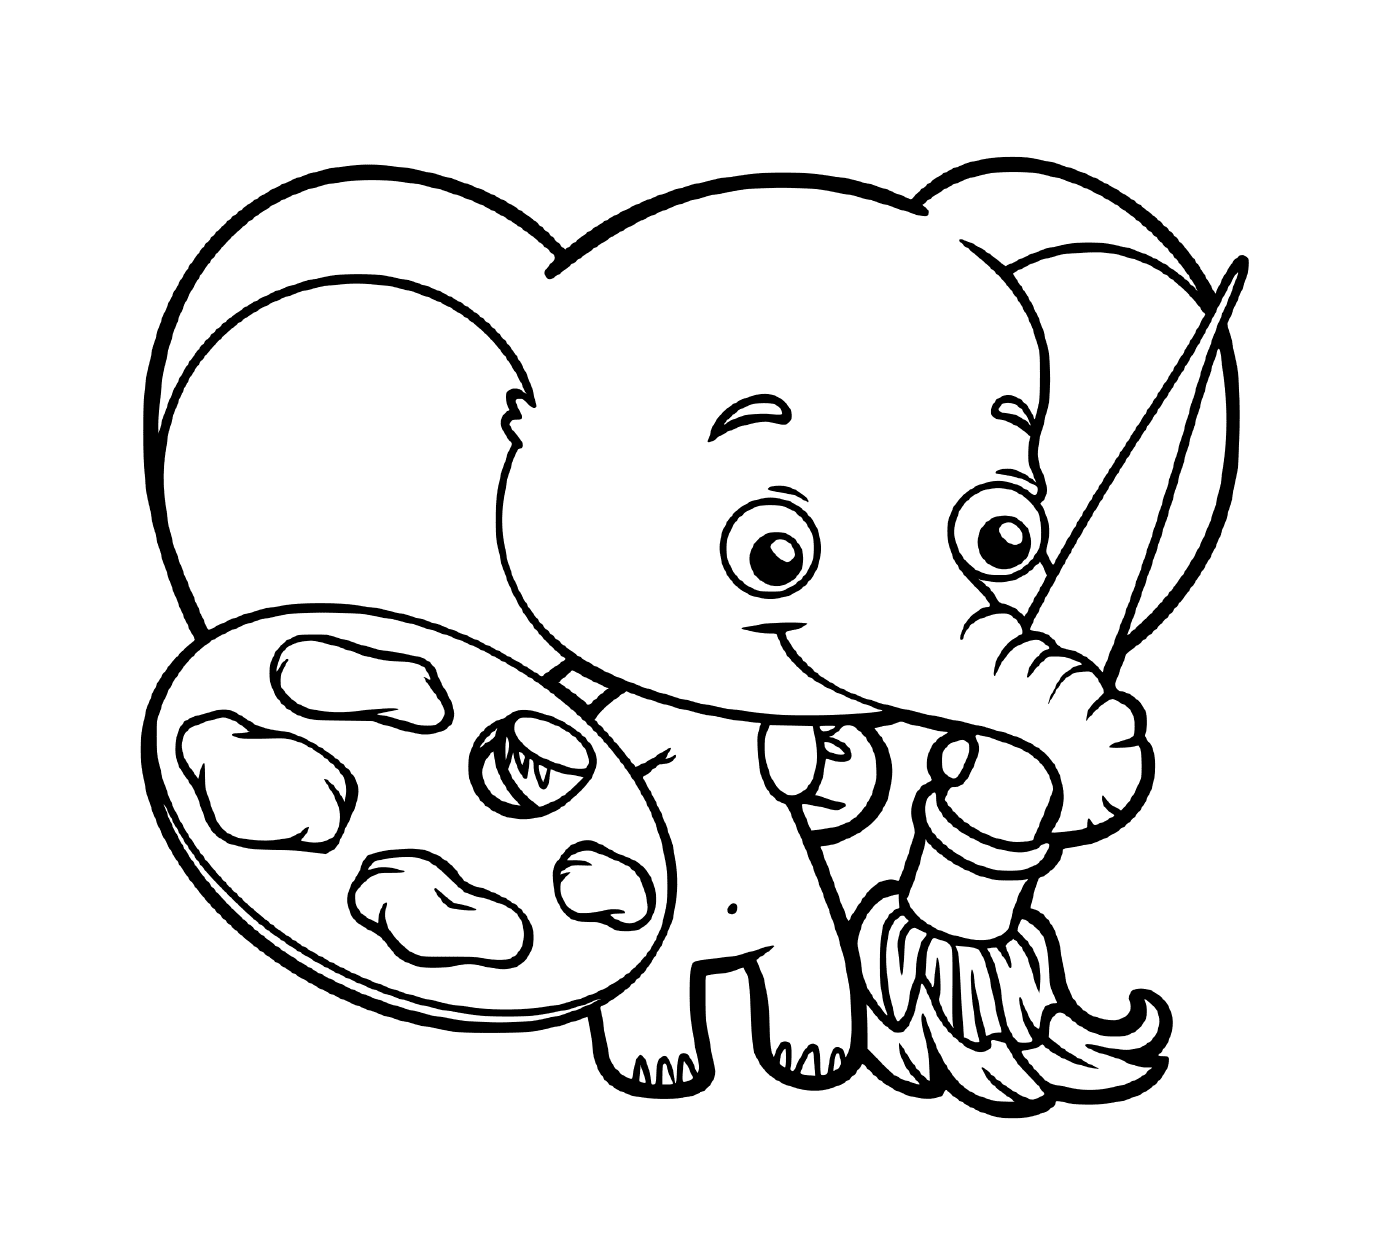  Детская картина слонов 